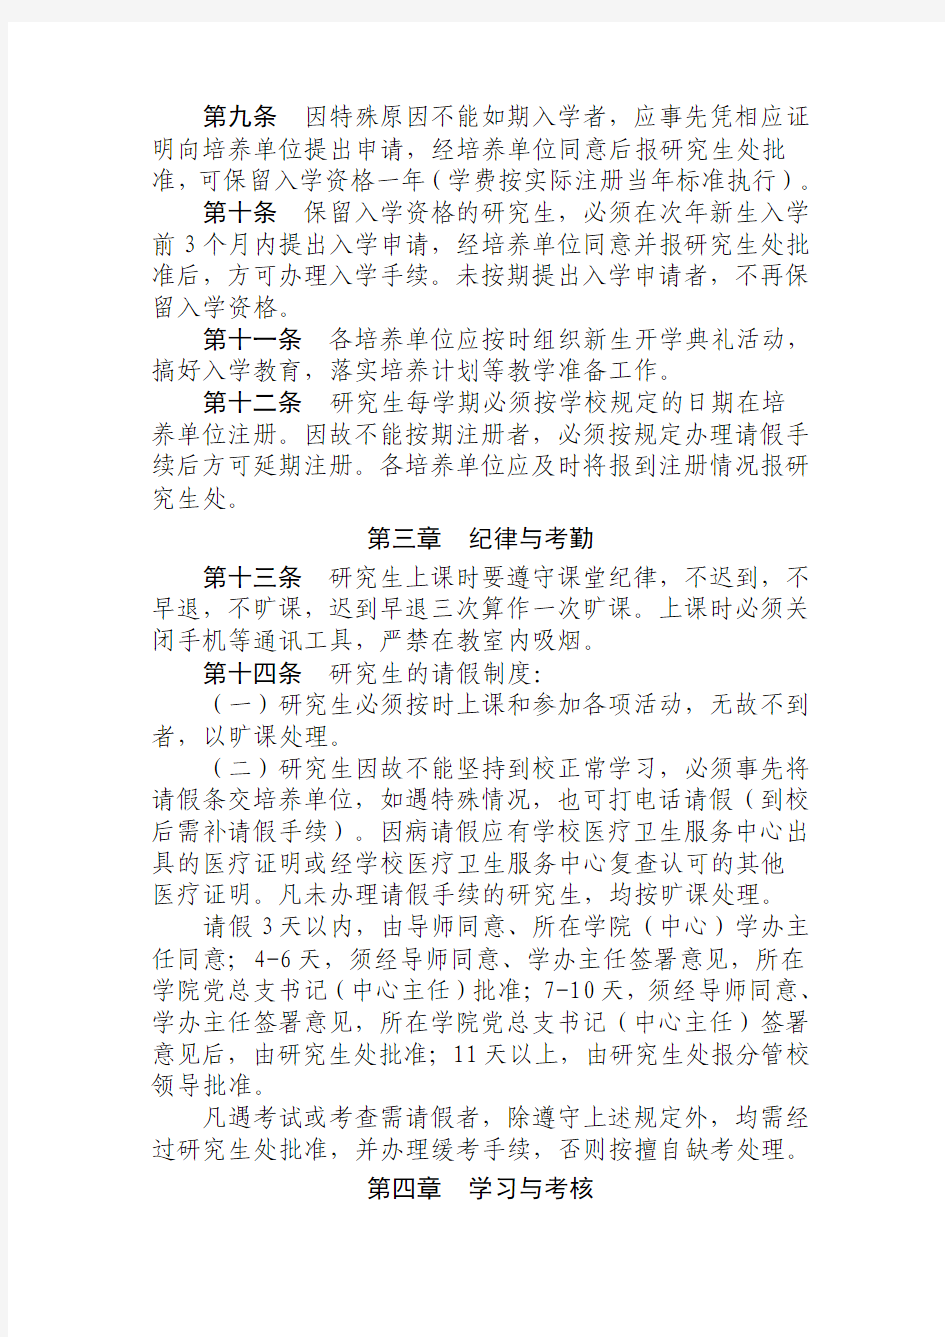 重庆理工大学专业学位硕士研究生培养管理工作条例